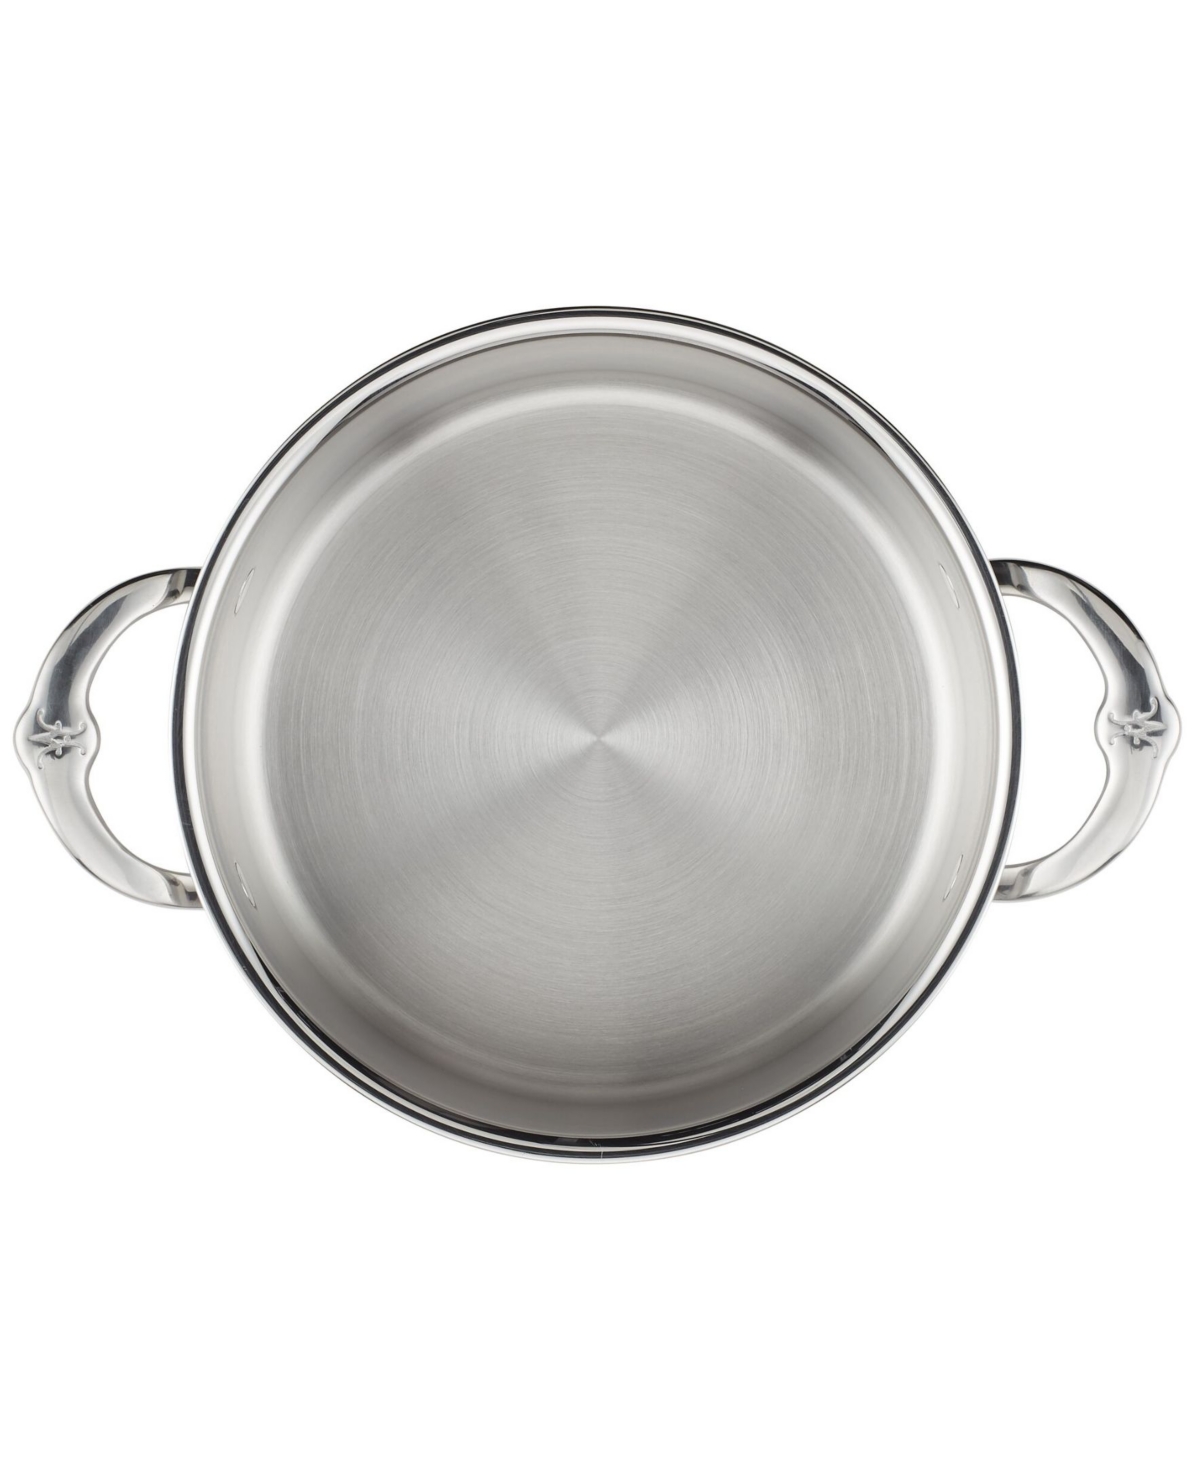 Shop Hestan Probond Clad Stainless Steel 3-quart Covered Soup Pot